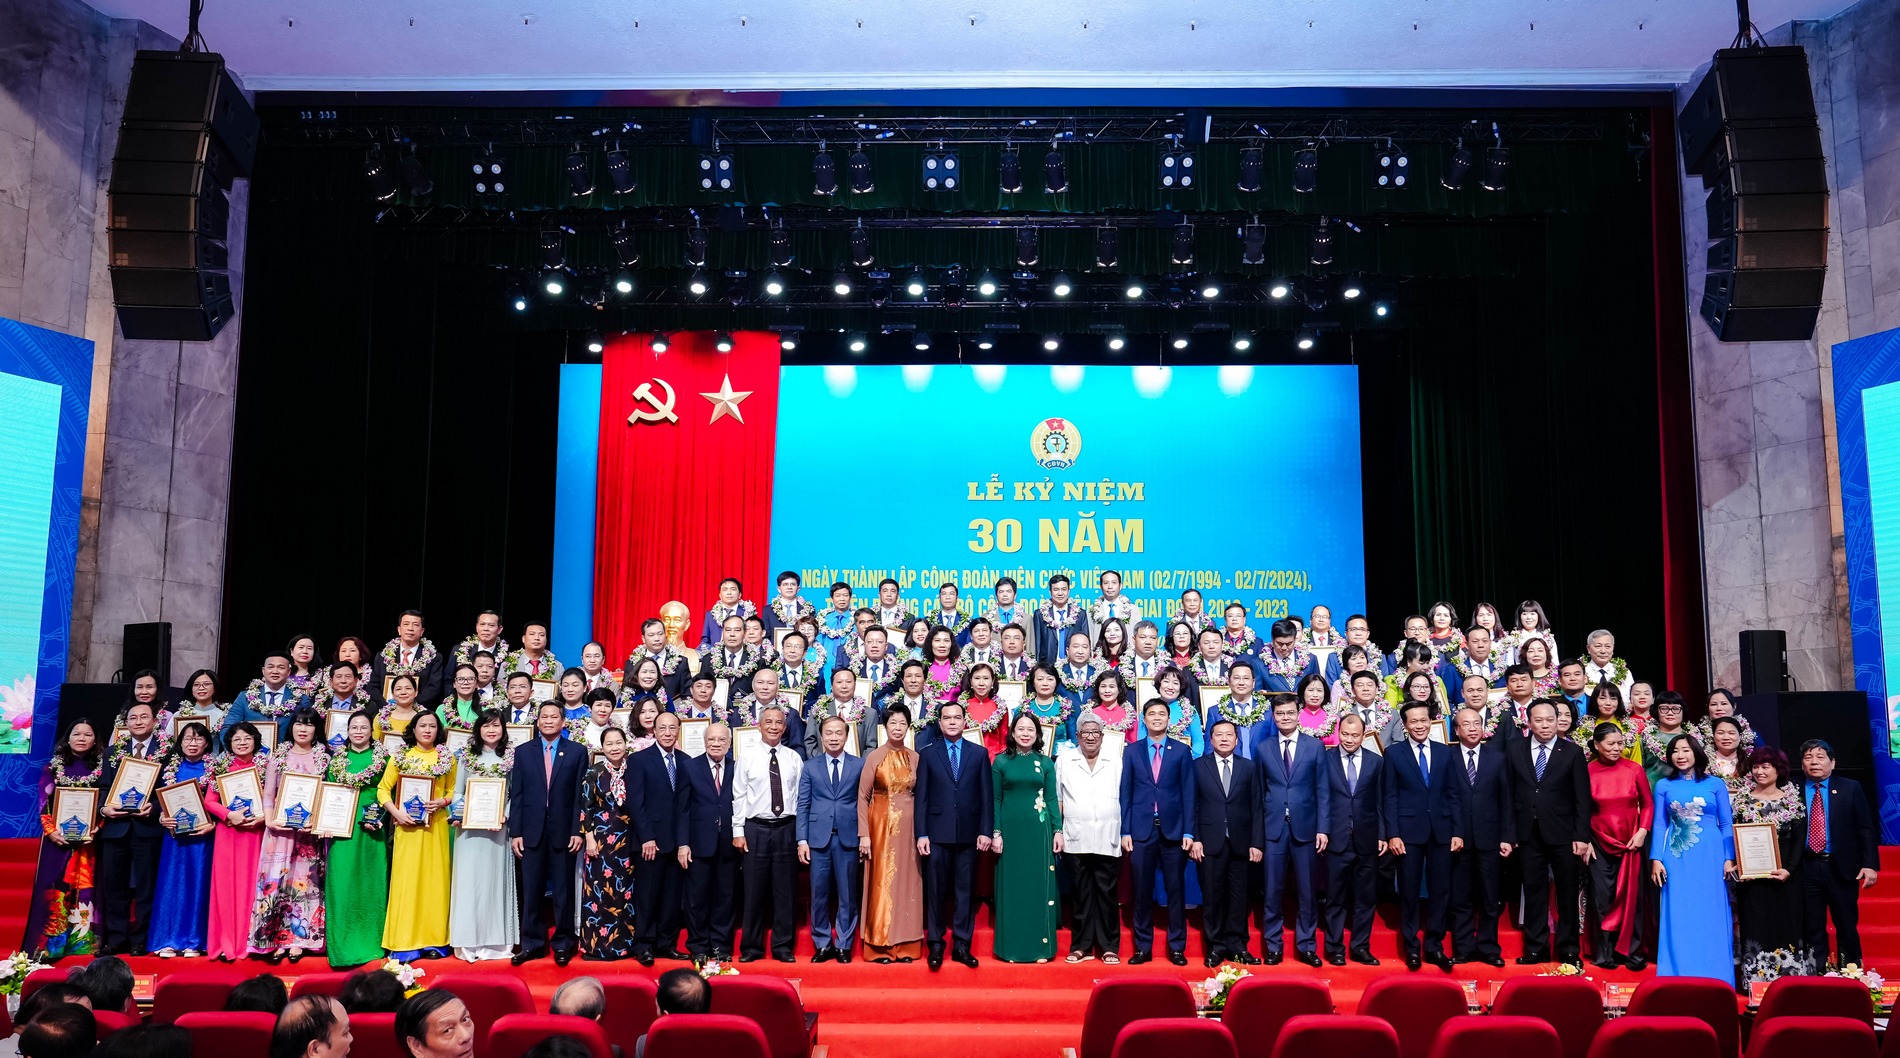 Ảnh: 100 cán bộ công đoàn tiêu biểu các cấp Công đoàn Viên chức Việt Nam, giai đoạn 2018 - 2013